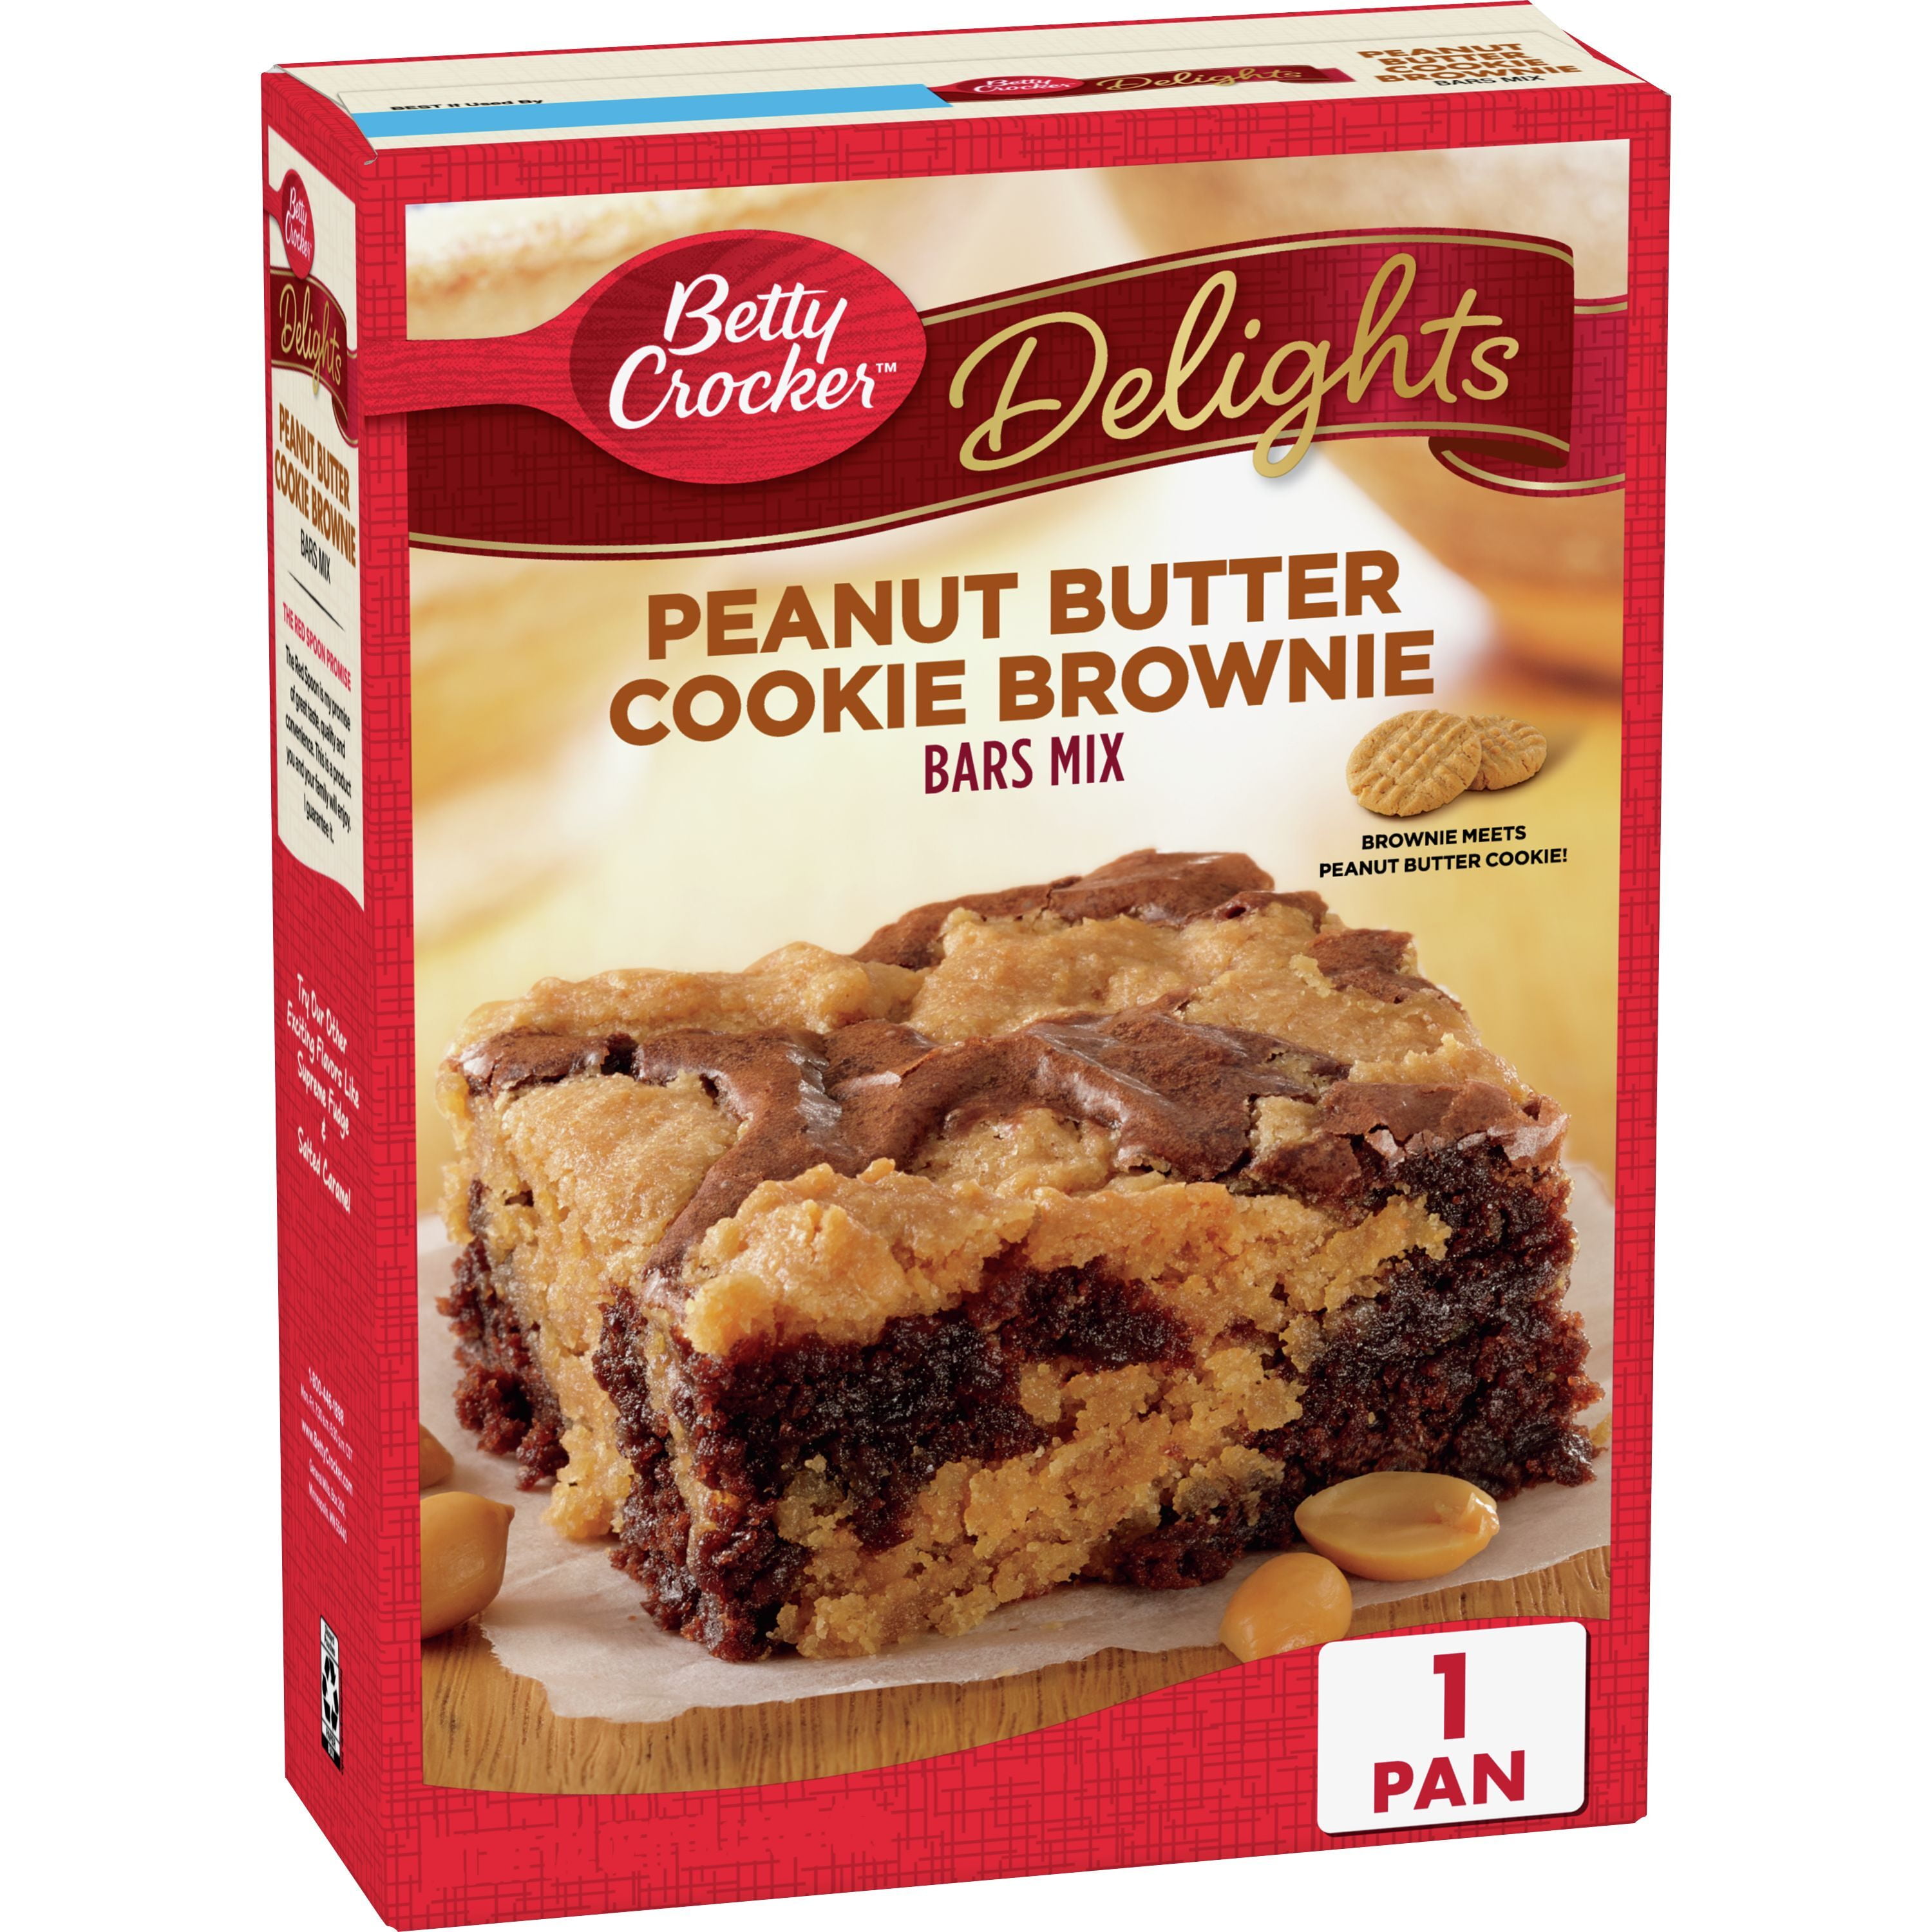 Betty Crocker Peanut Butter Cookie Brownie Bar Mix, 17.2 oz